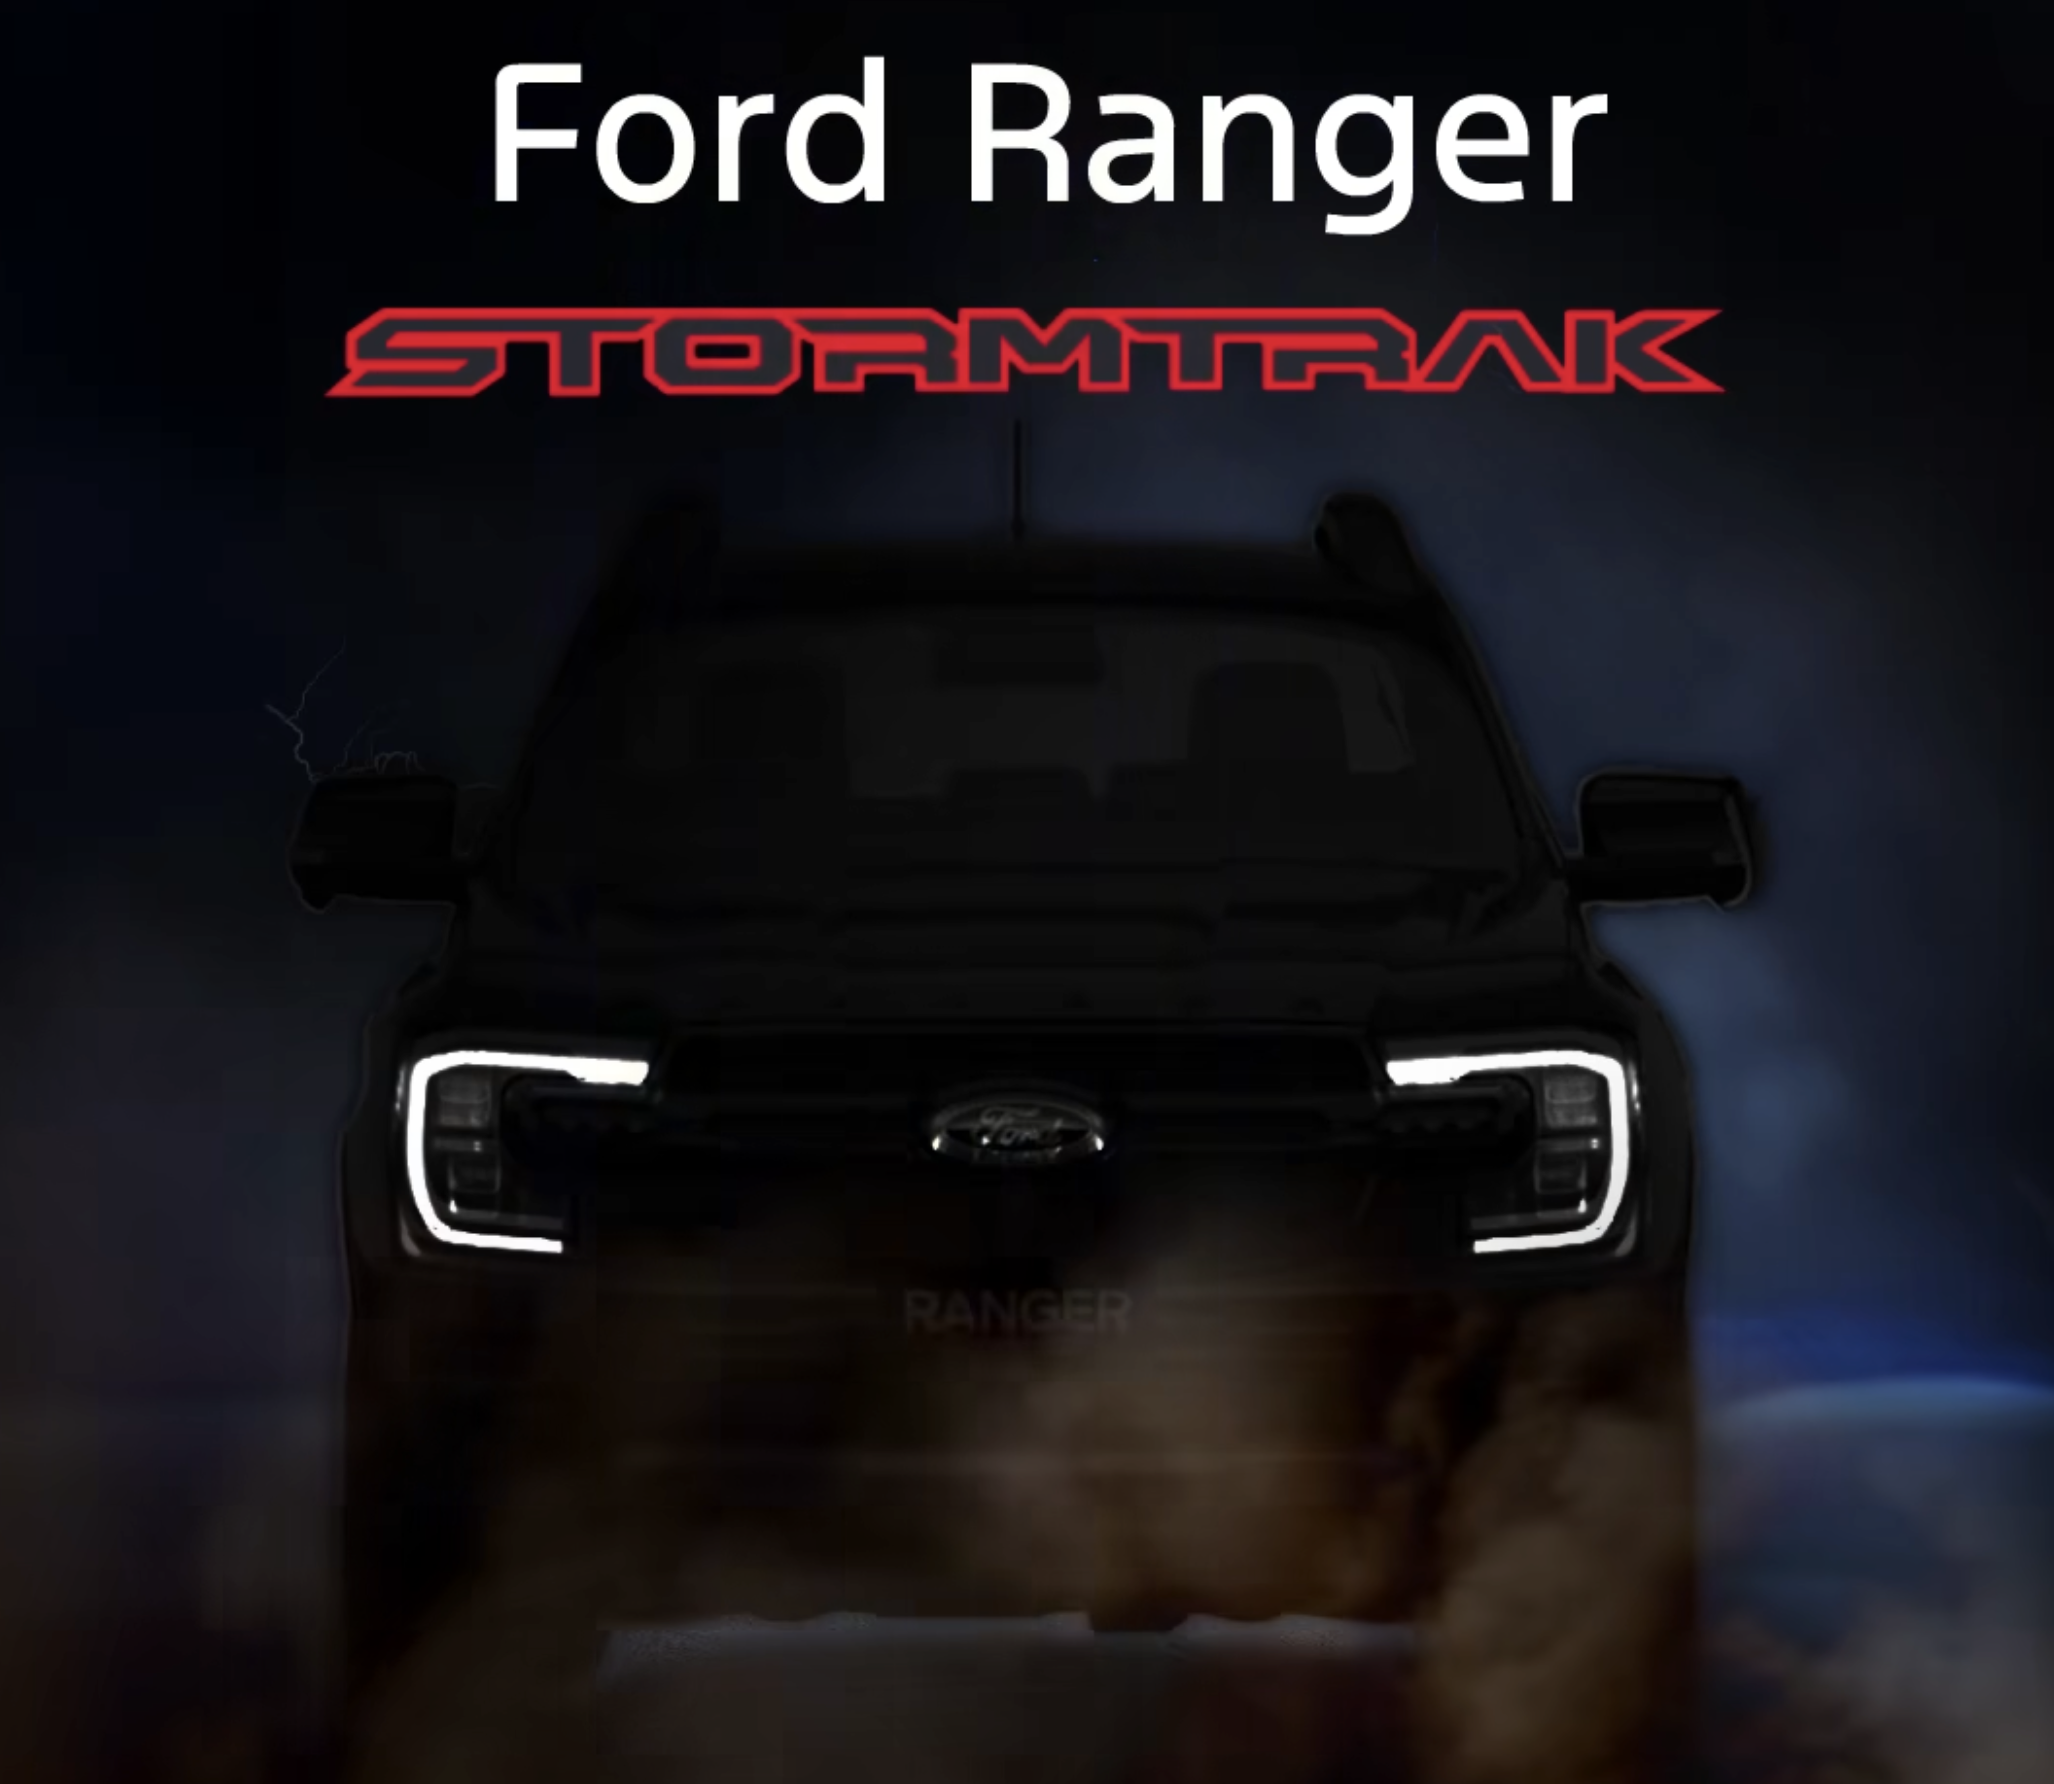 Ranger Stormtrak ra mat anh 1